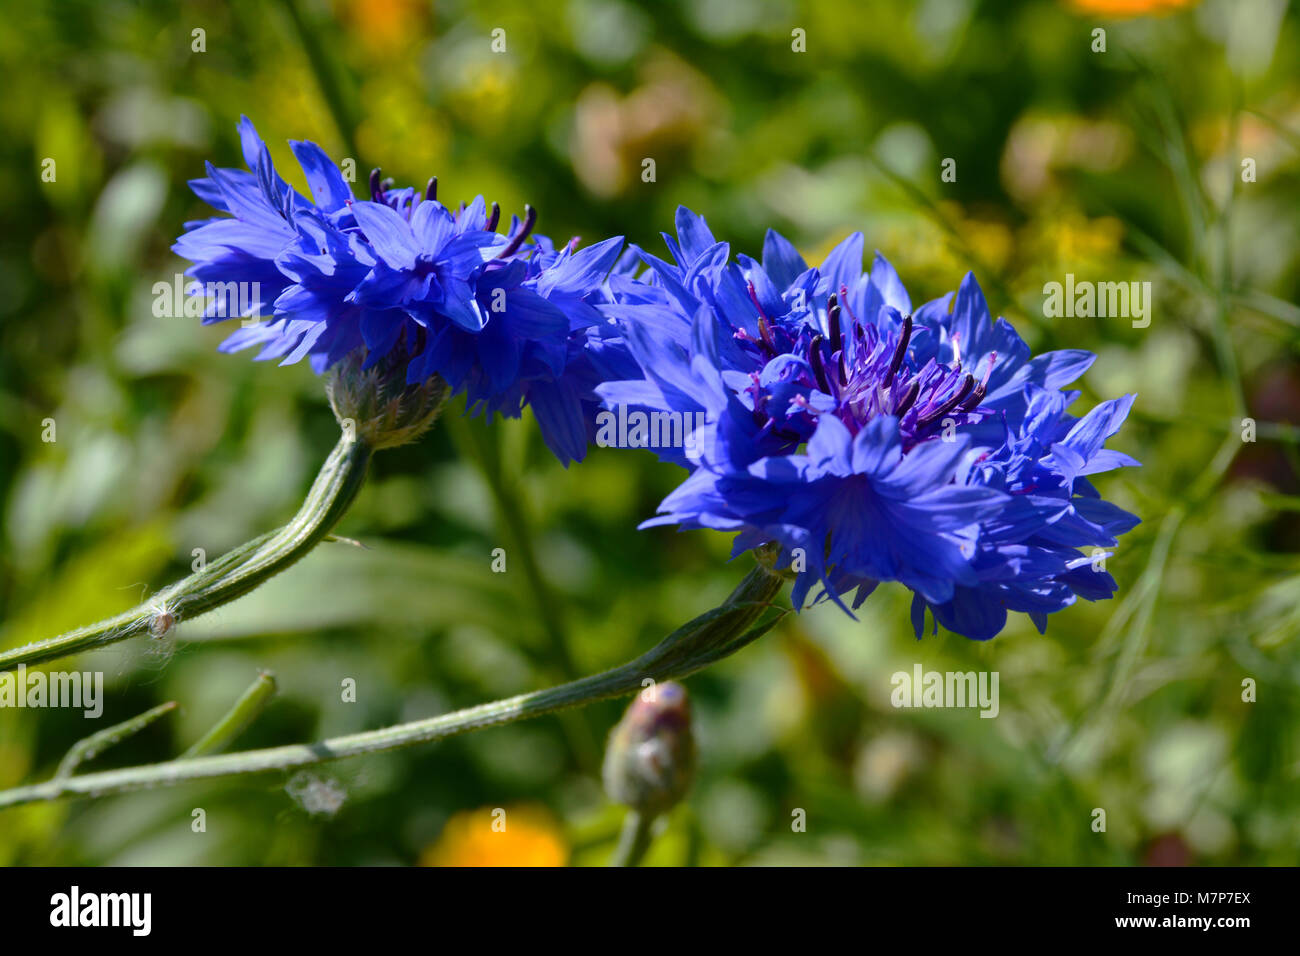 Estonian national flower corn flower, blue flower, blue petals on a green grass background Stock Photo